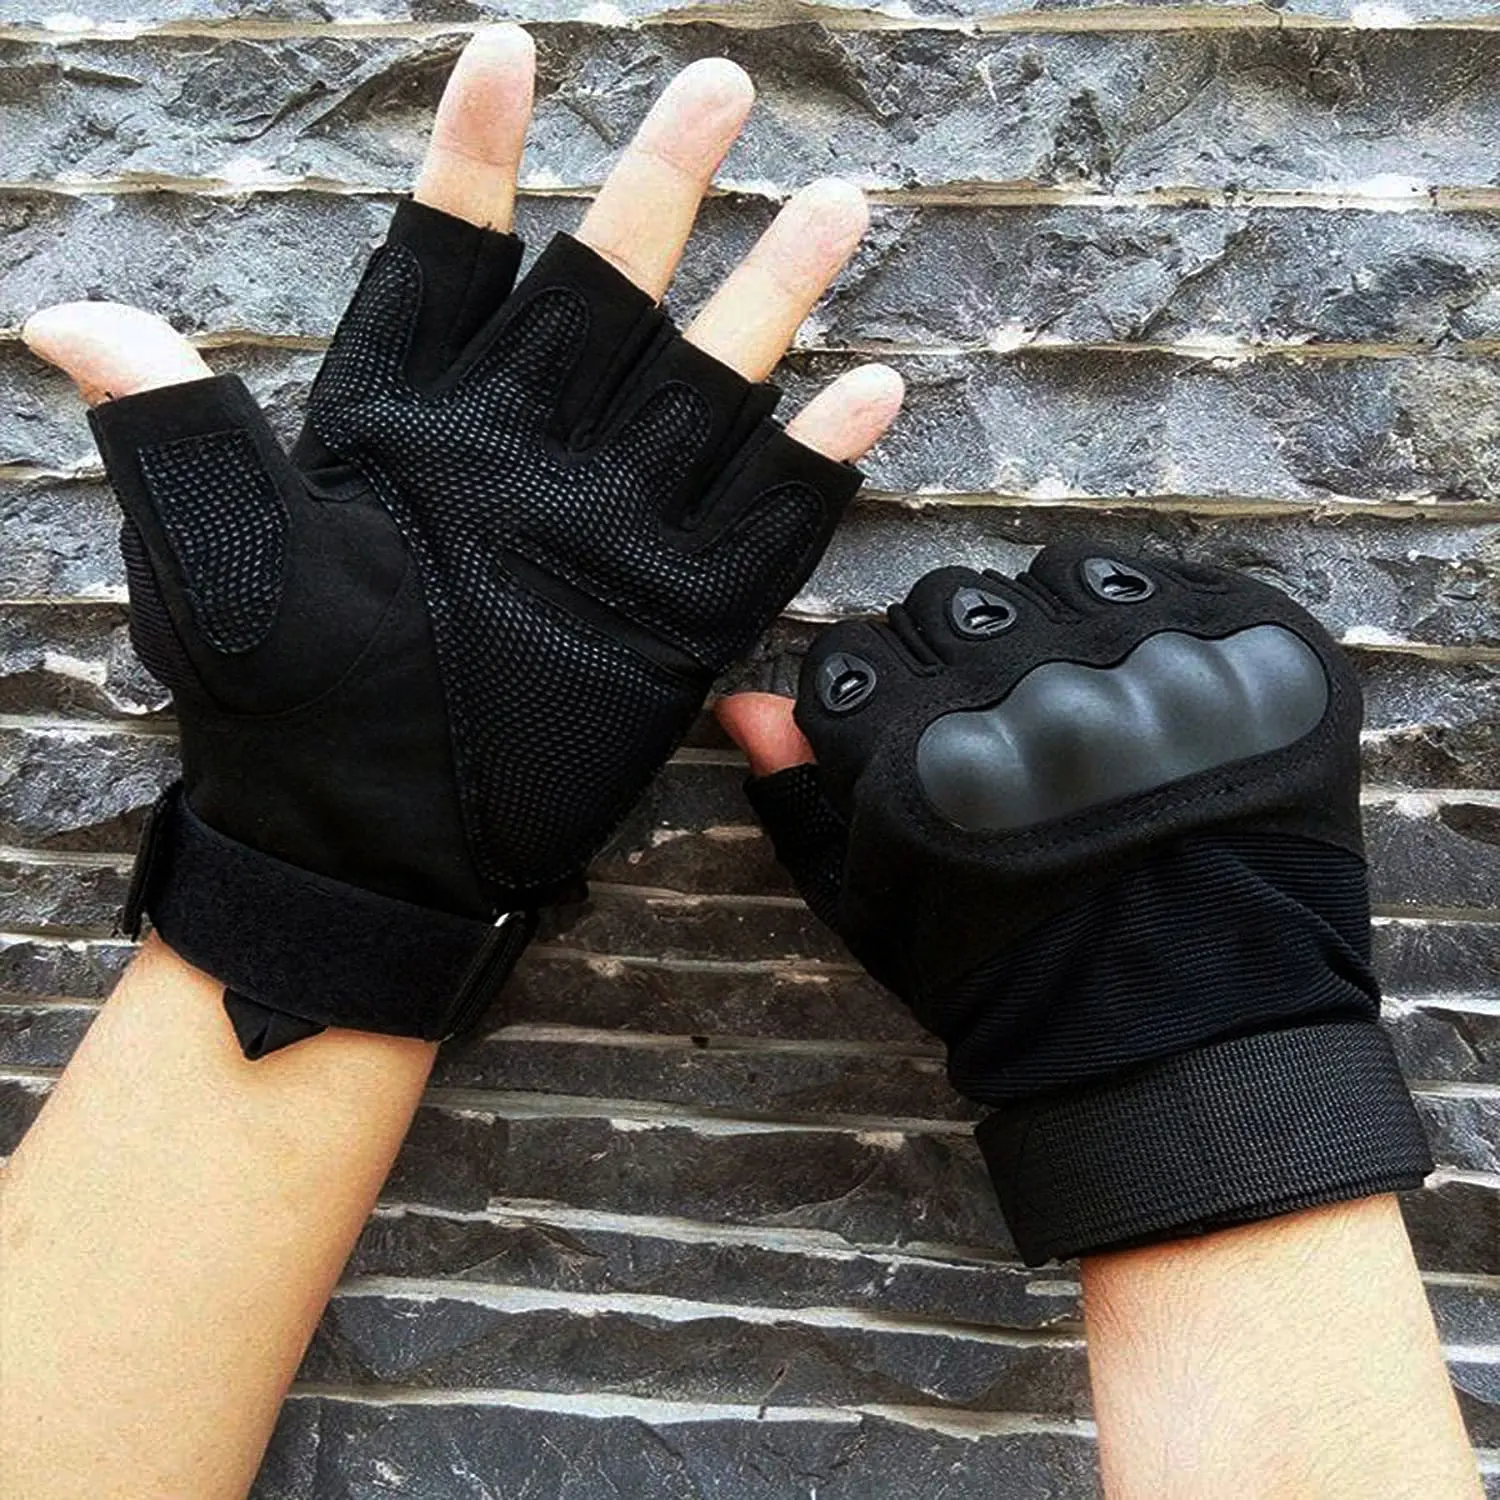 Перчатки без пальчиков. Meyer Gloves MC- 1210 перчатка для стрельбы. Перчатки Fox велосипедные 2008 года без пальцев мужские р9. Перчатки с обрезанными пальцами. Перчатки без пальцев мужские.